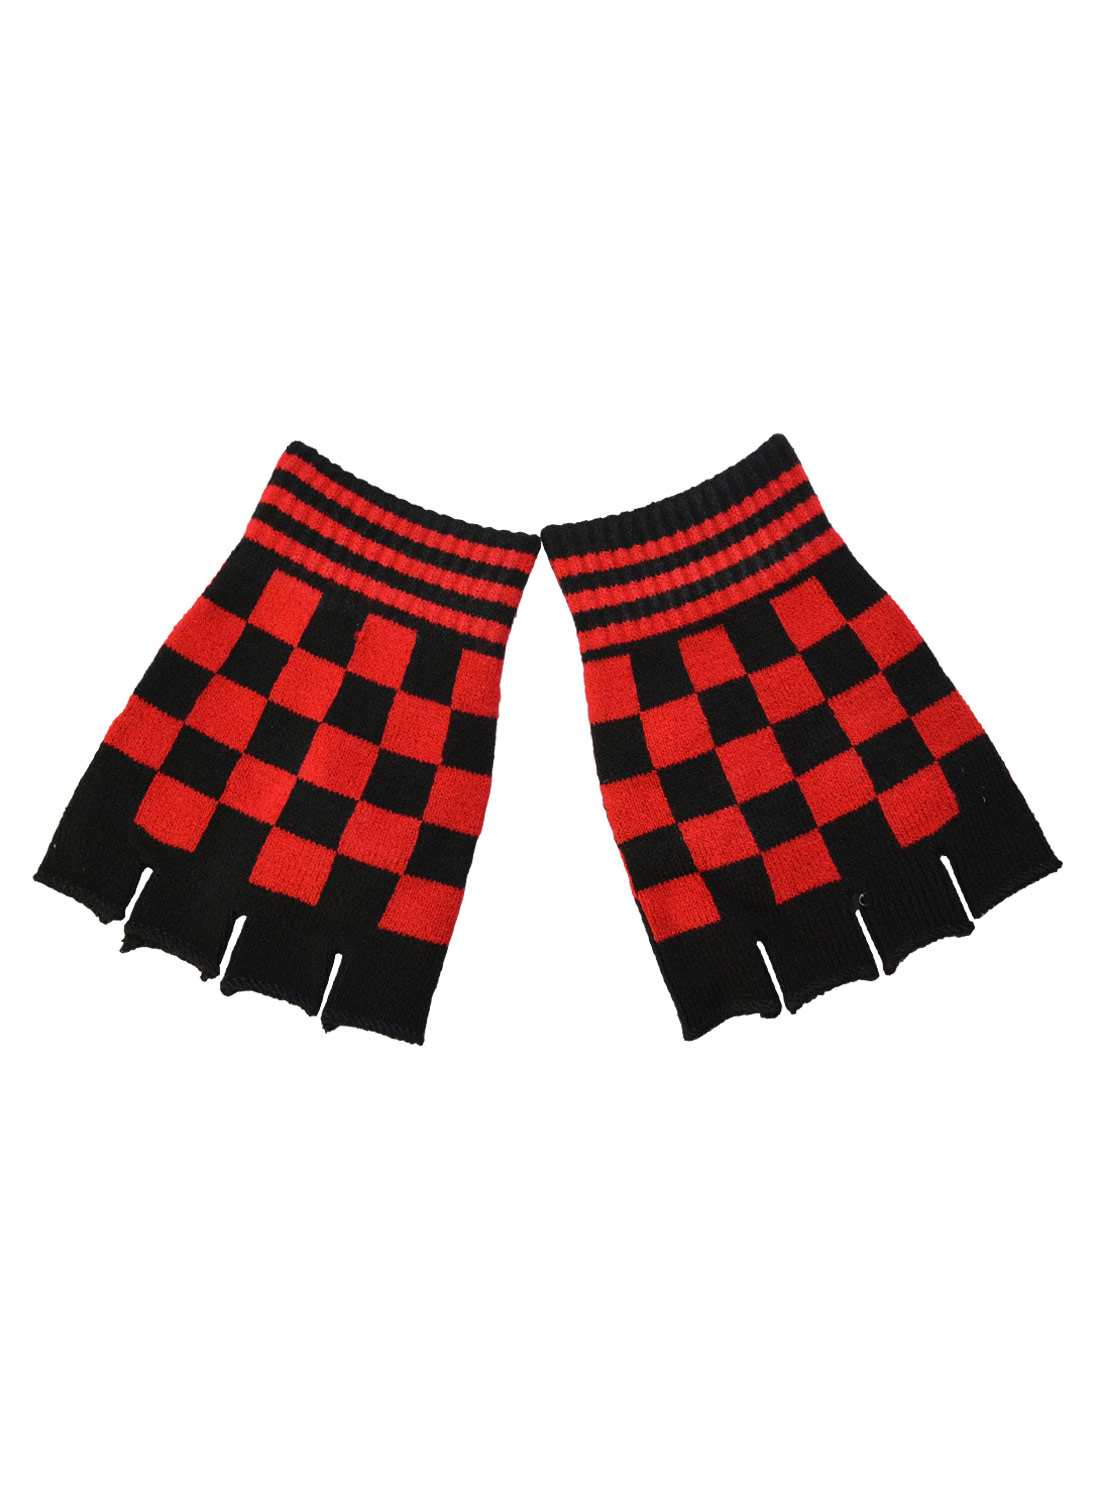 Fingerless Gloves Checkered Black&Red